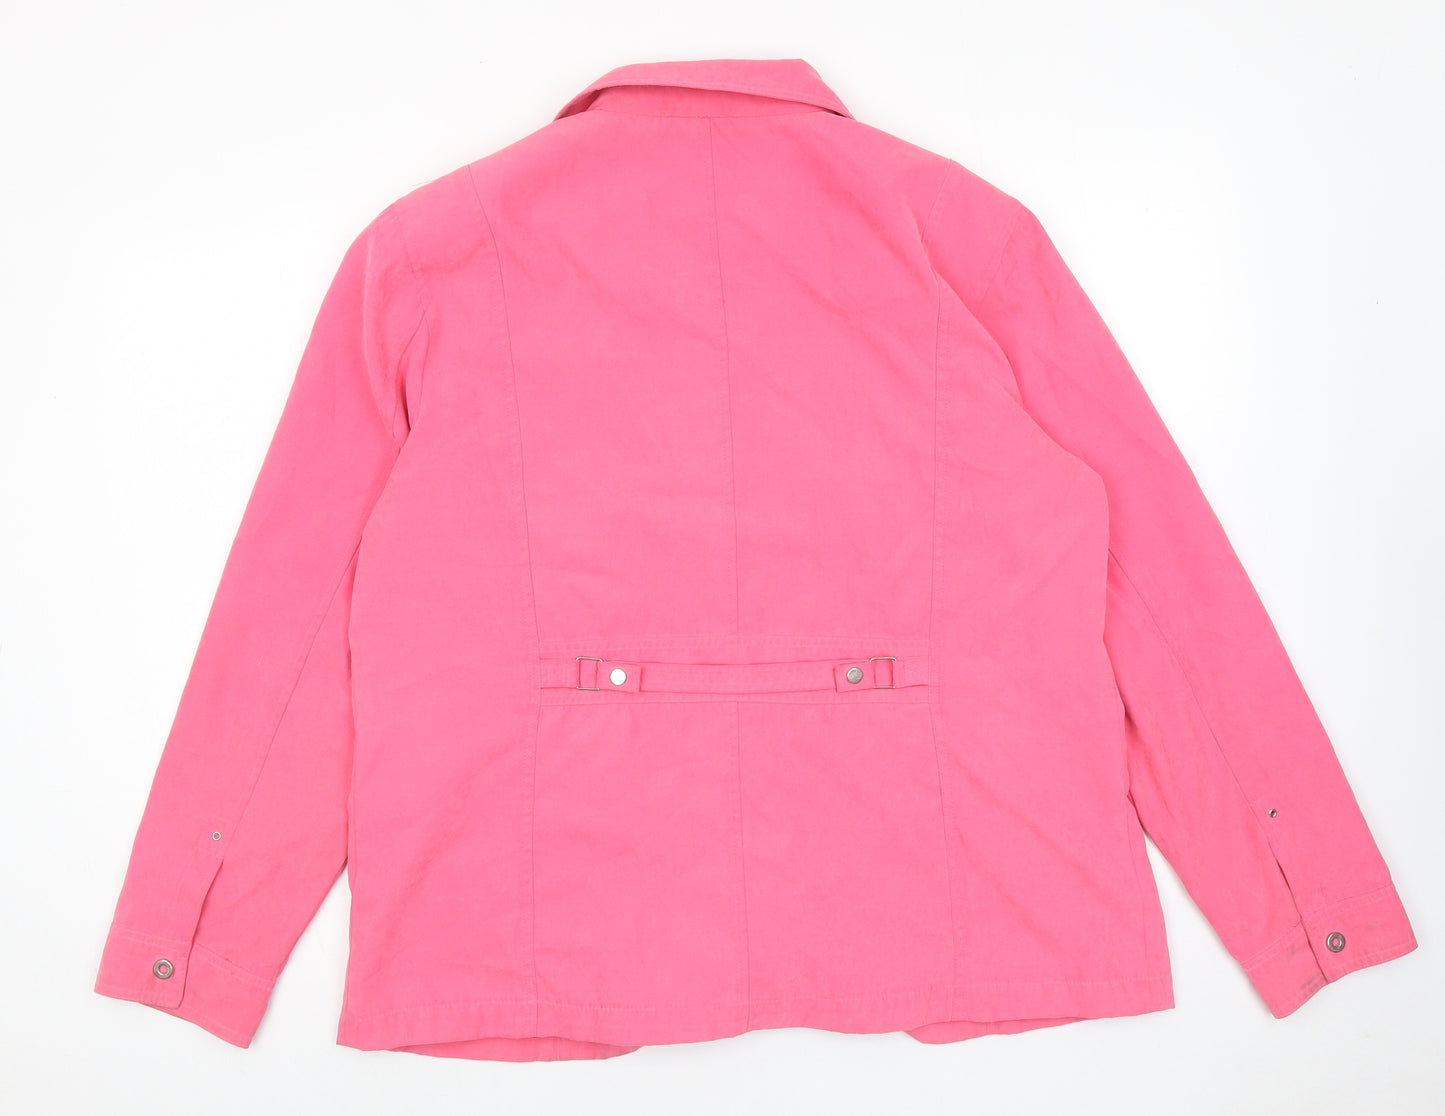 Klass Womens Pink Jacket Size 18 Zip